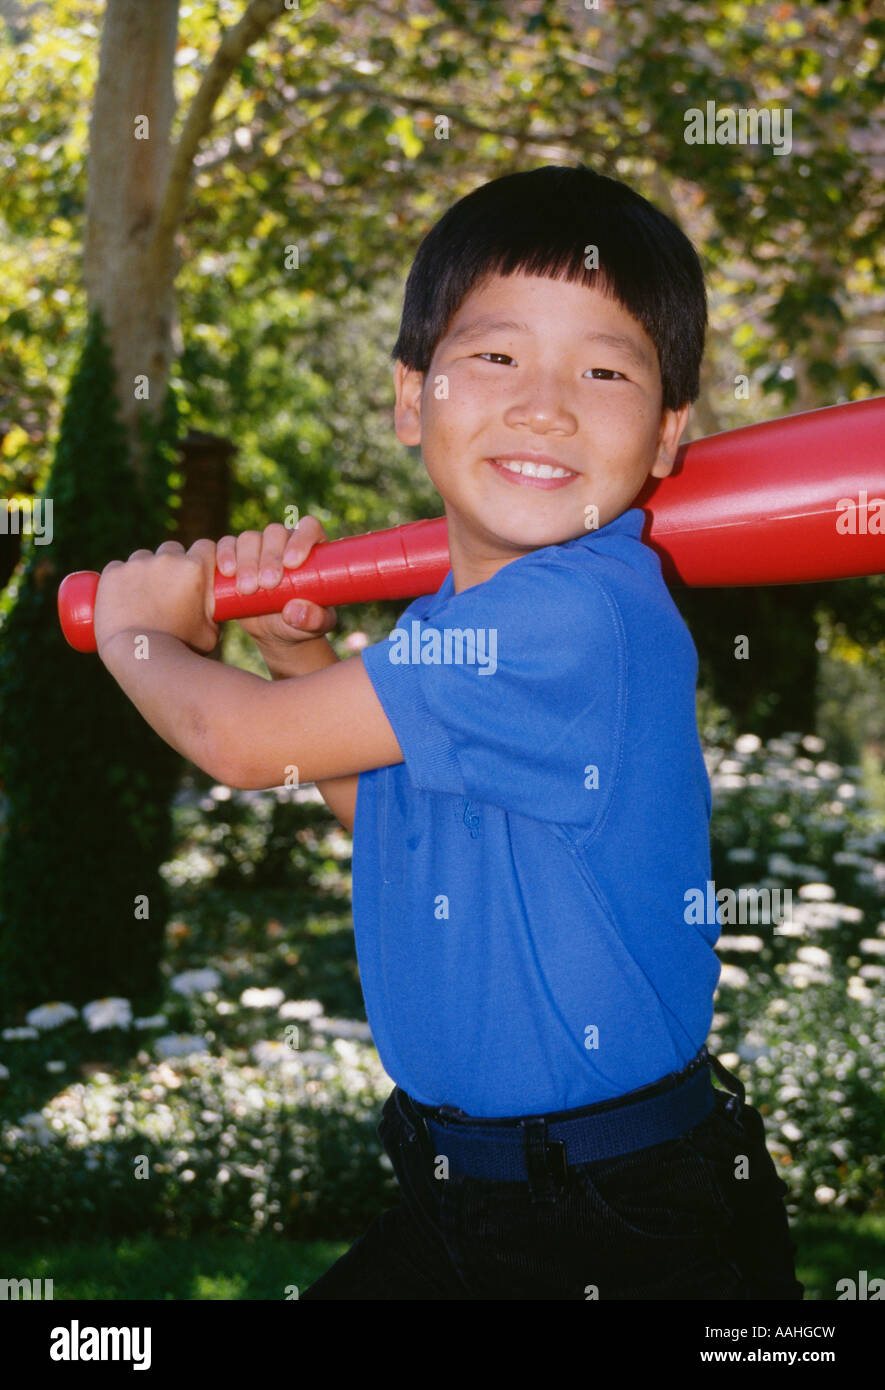 Portrait young Ethnic Korean Boy 4-5 year old holding large plastic toy baseball  bat batting Stock Photo